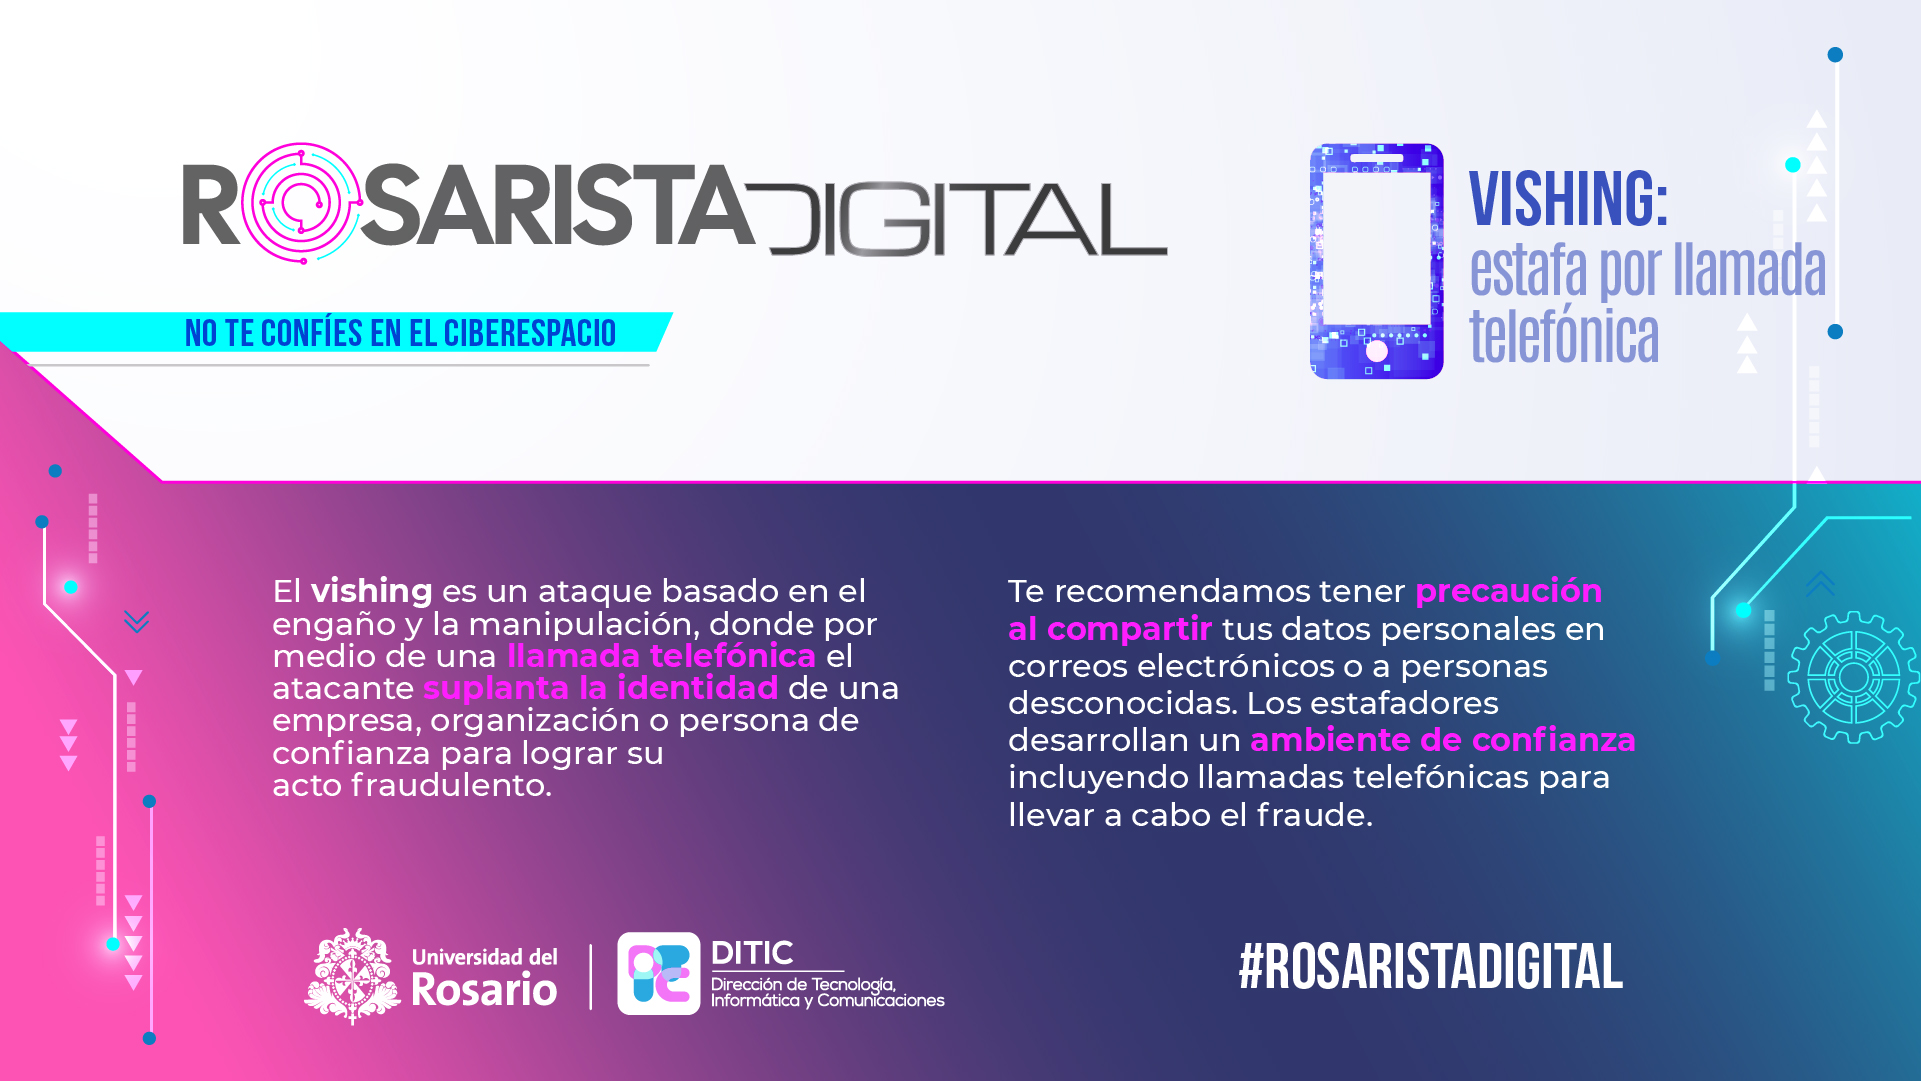 Cishing- Rosarista digital